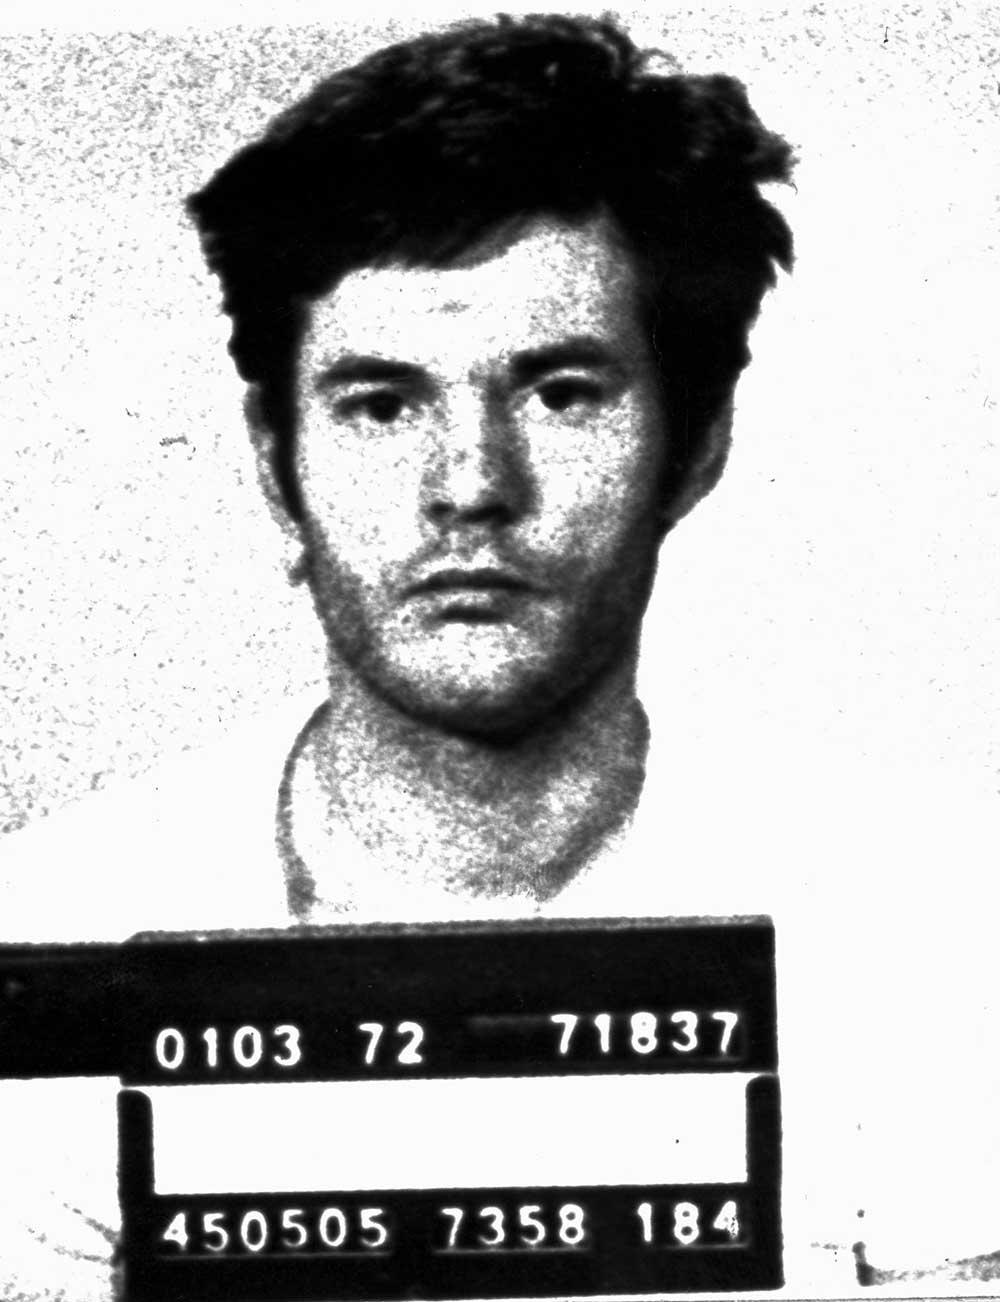 Lars-Inge Svartenbrandt fotad av polisen i samband med ett gripande 1972.